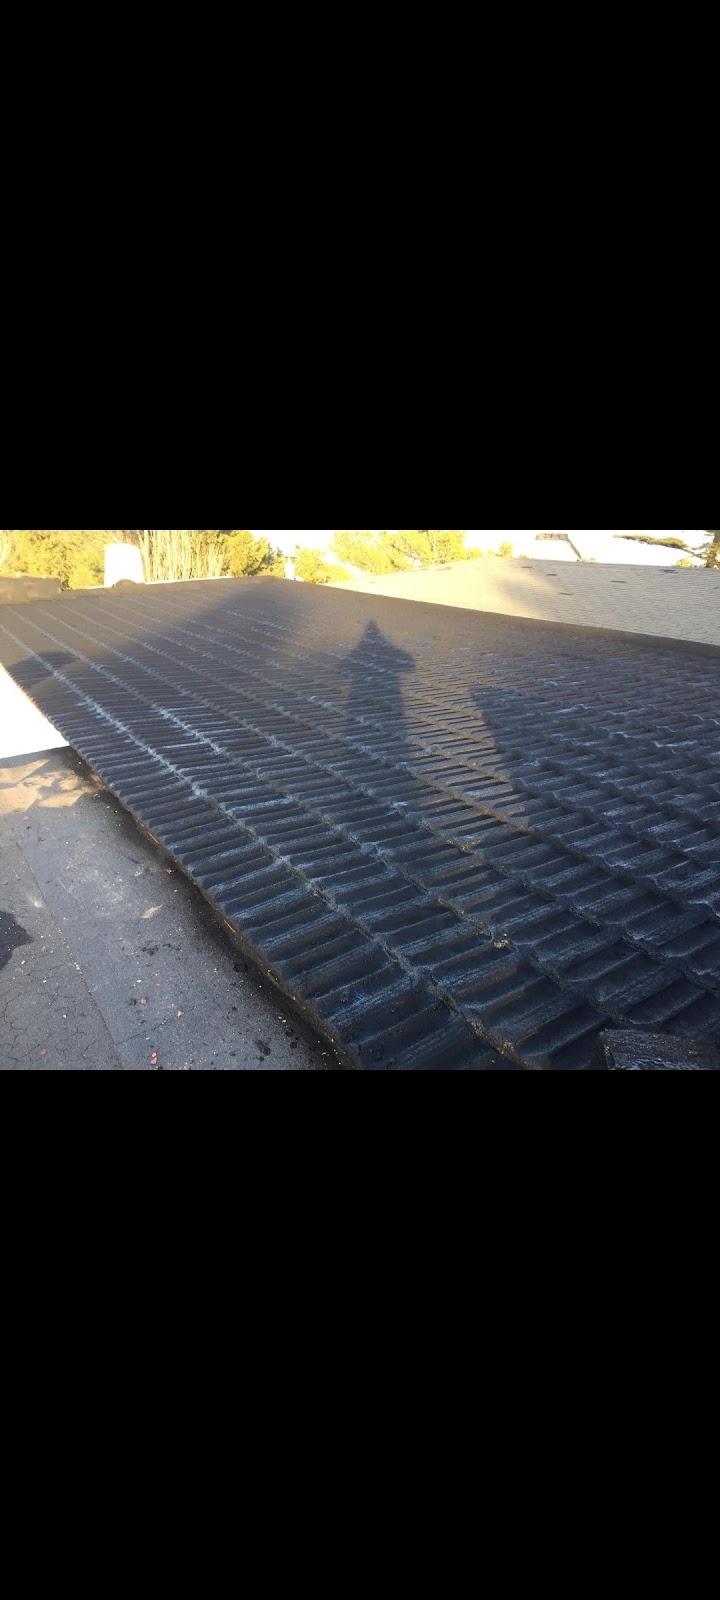 Impermeabilizacion de tejado en valencia mediante aislantes de resina